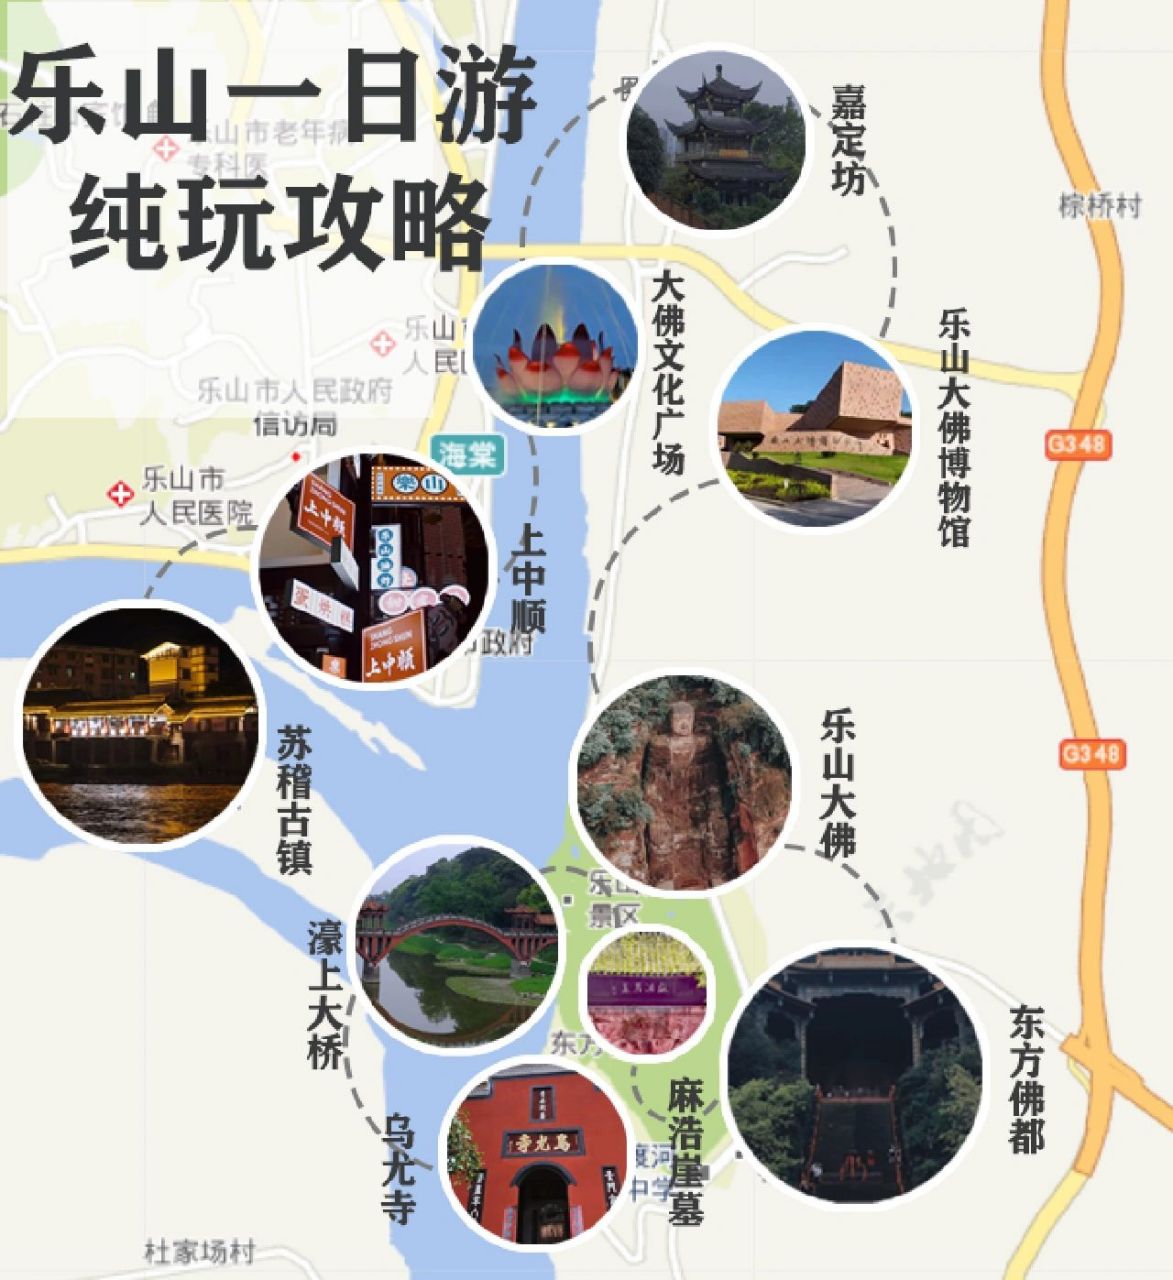 老乐山风景区游玩攻略图片